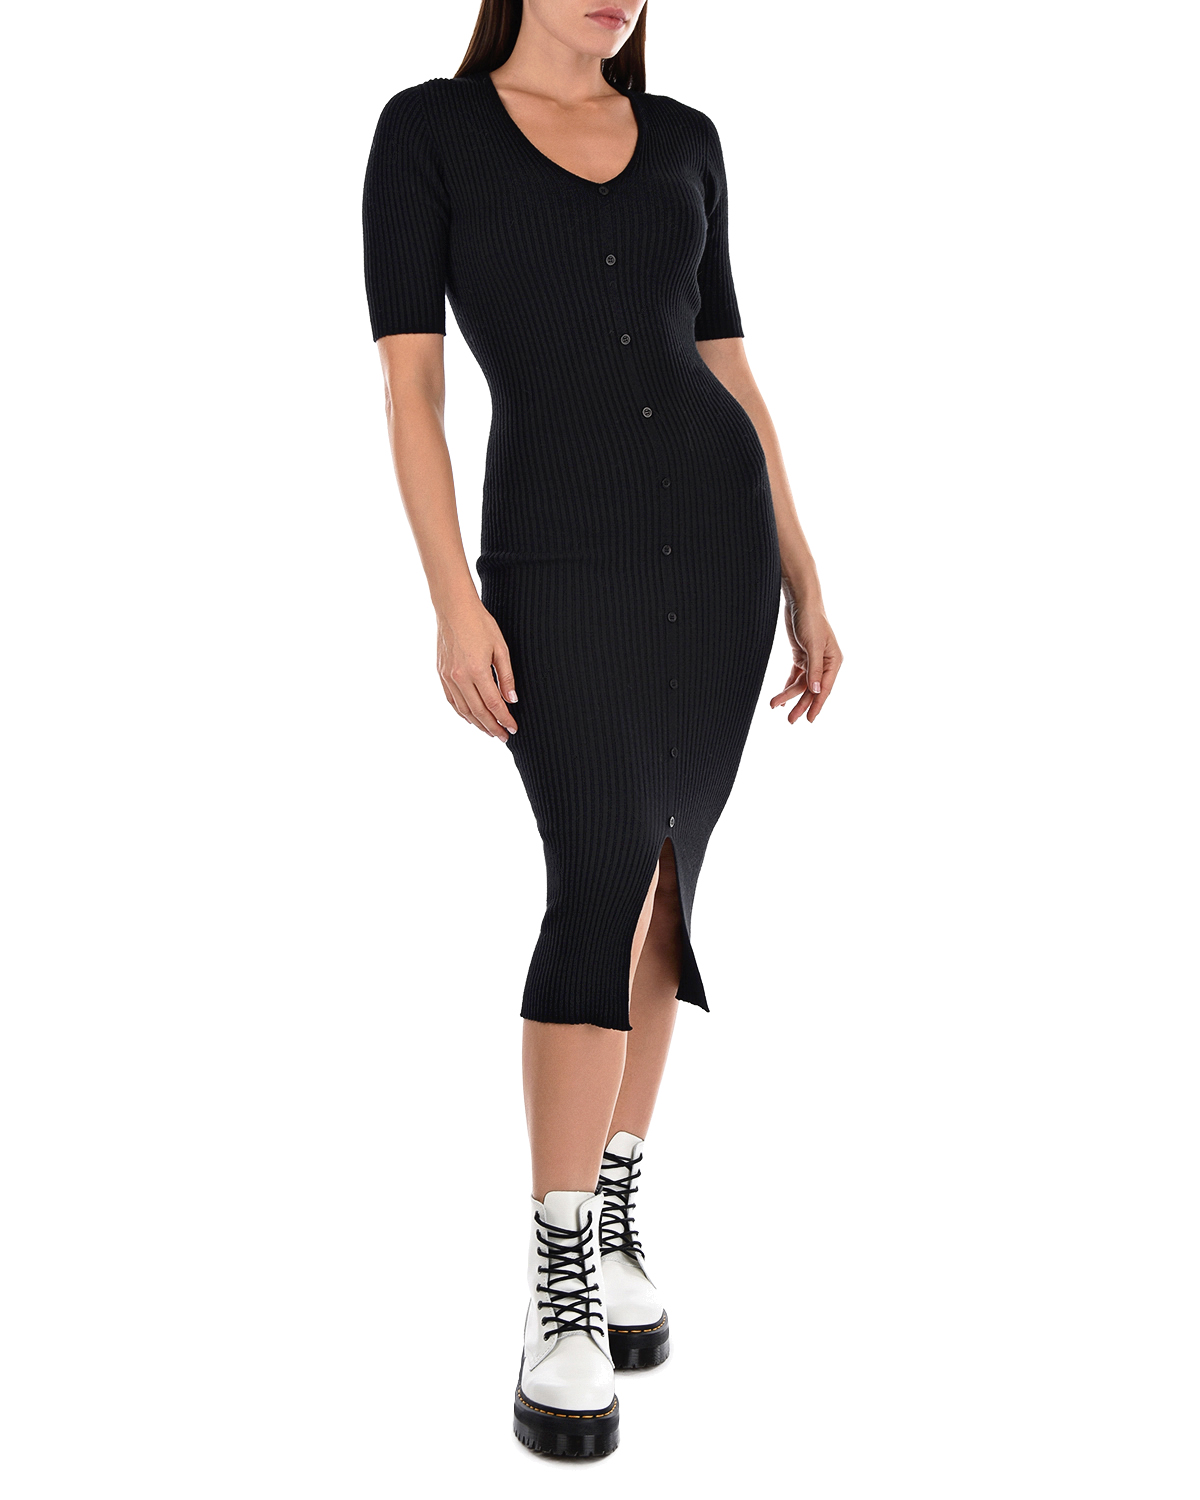 Черное трикотажное платье Bella Pietro Brunelli, размер 40, цвет черный - фото 3